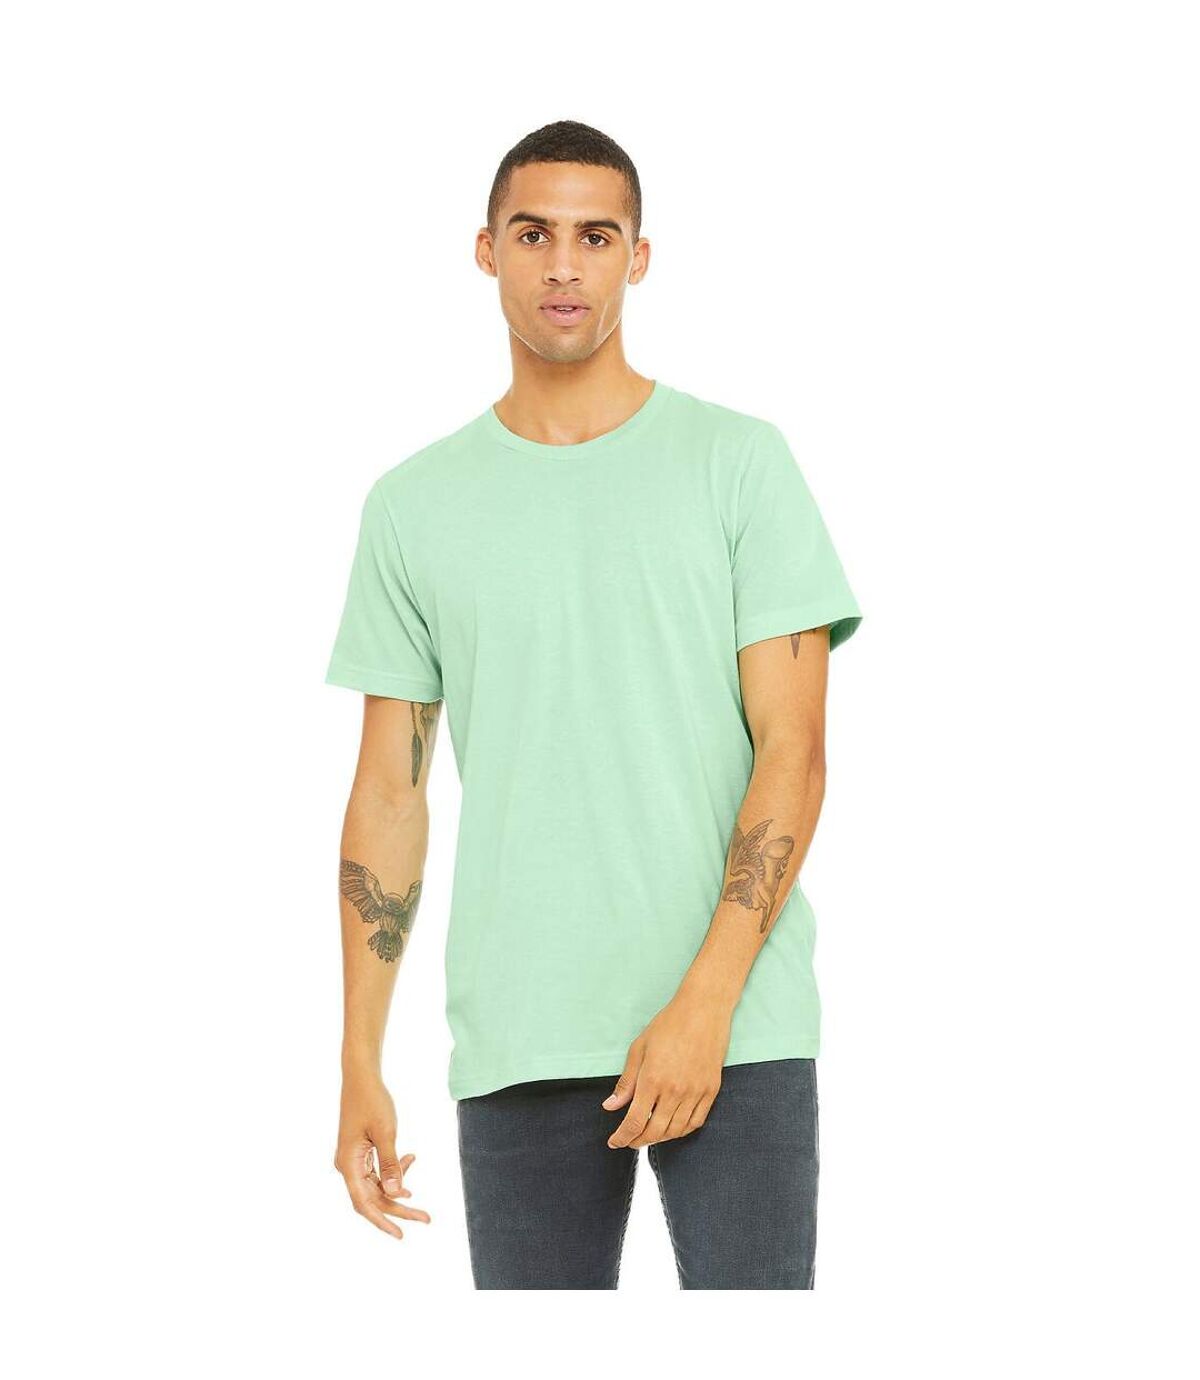 Canvas - T-shirt à manches courtes - Homme (Vert menthe) - UTBC2596